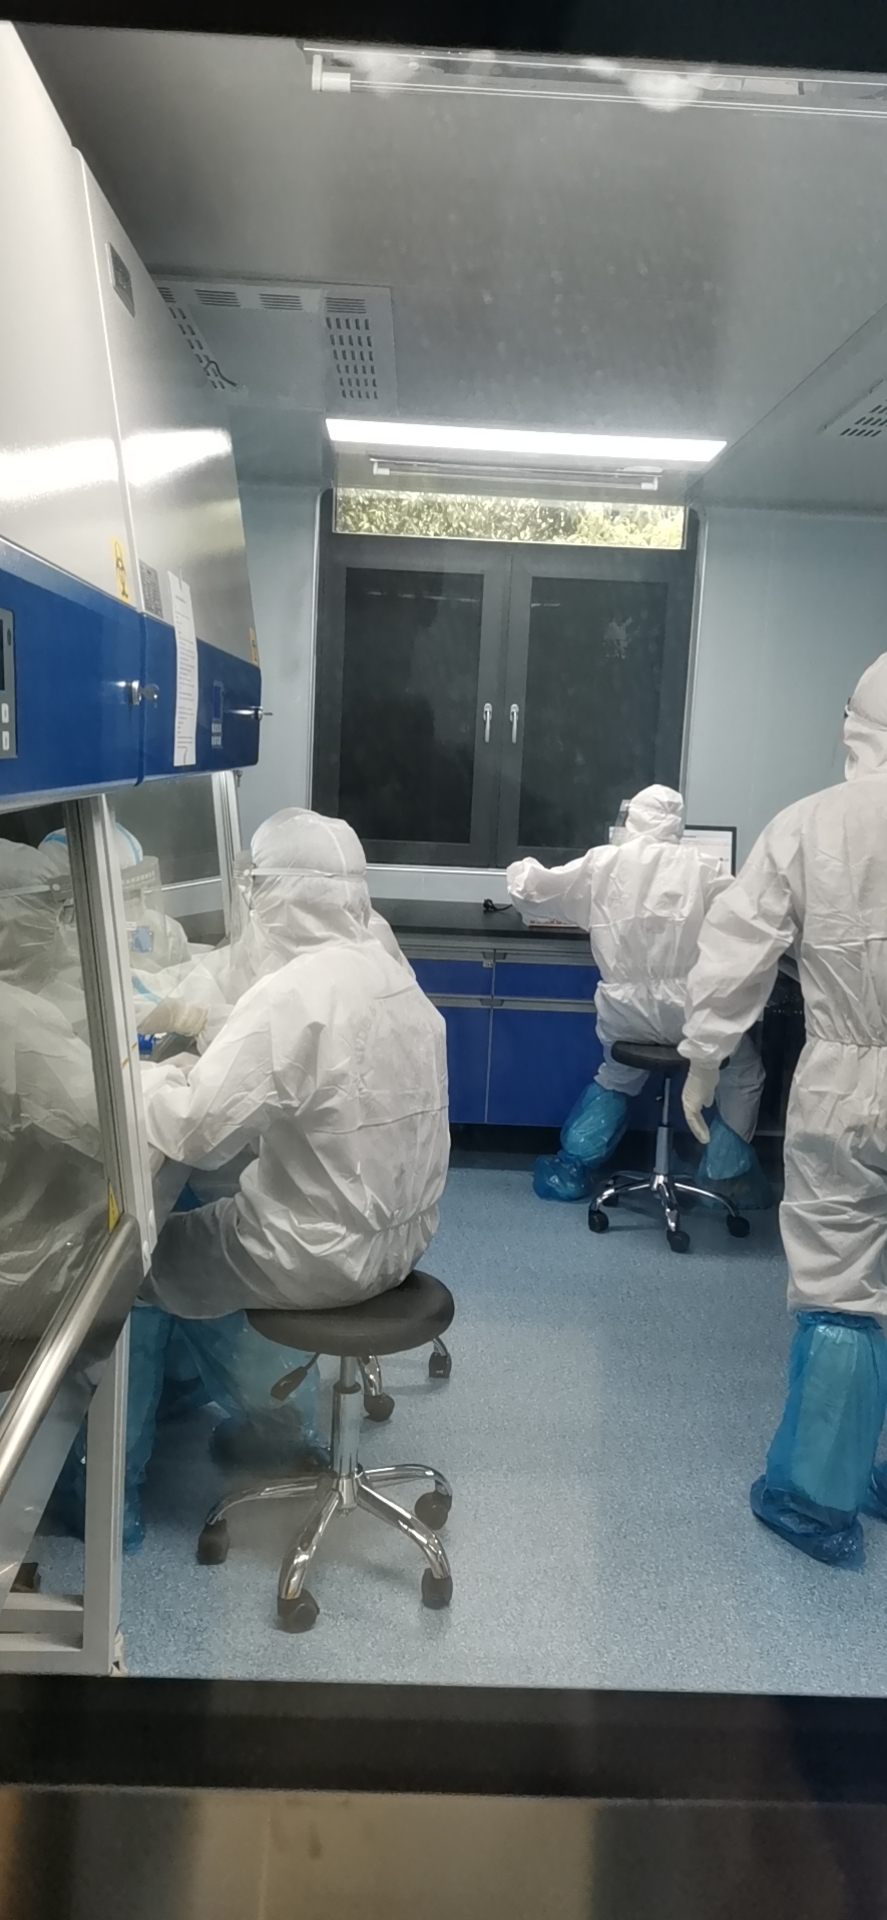 湖南省儿童医院核酸实验室内景。   长沙晚报通讯员 邓永超 摄